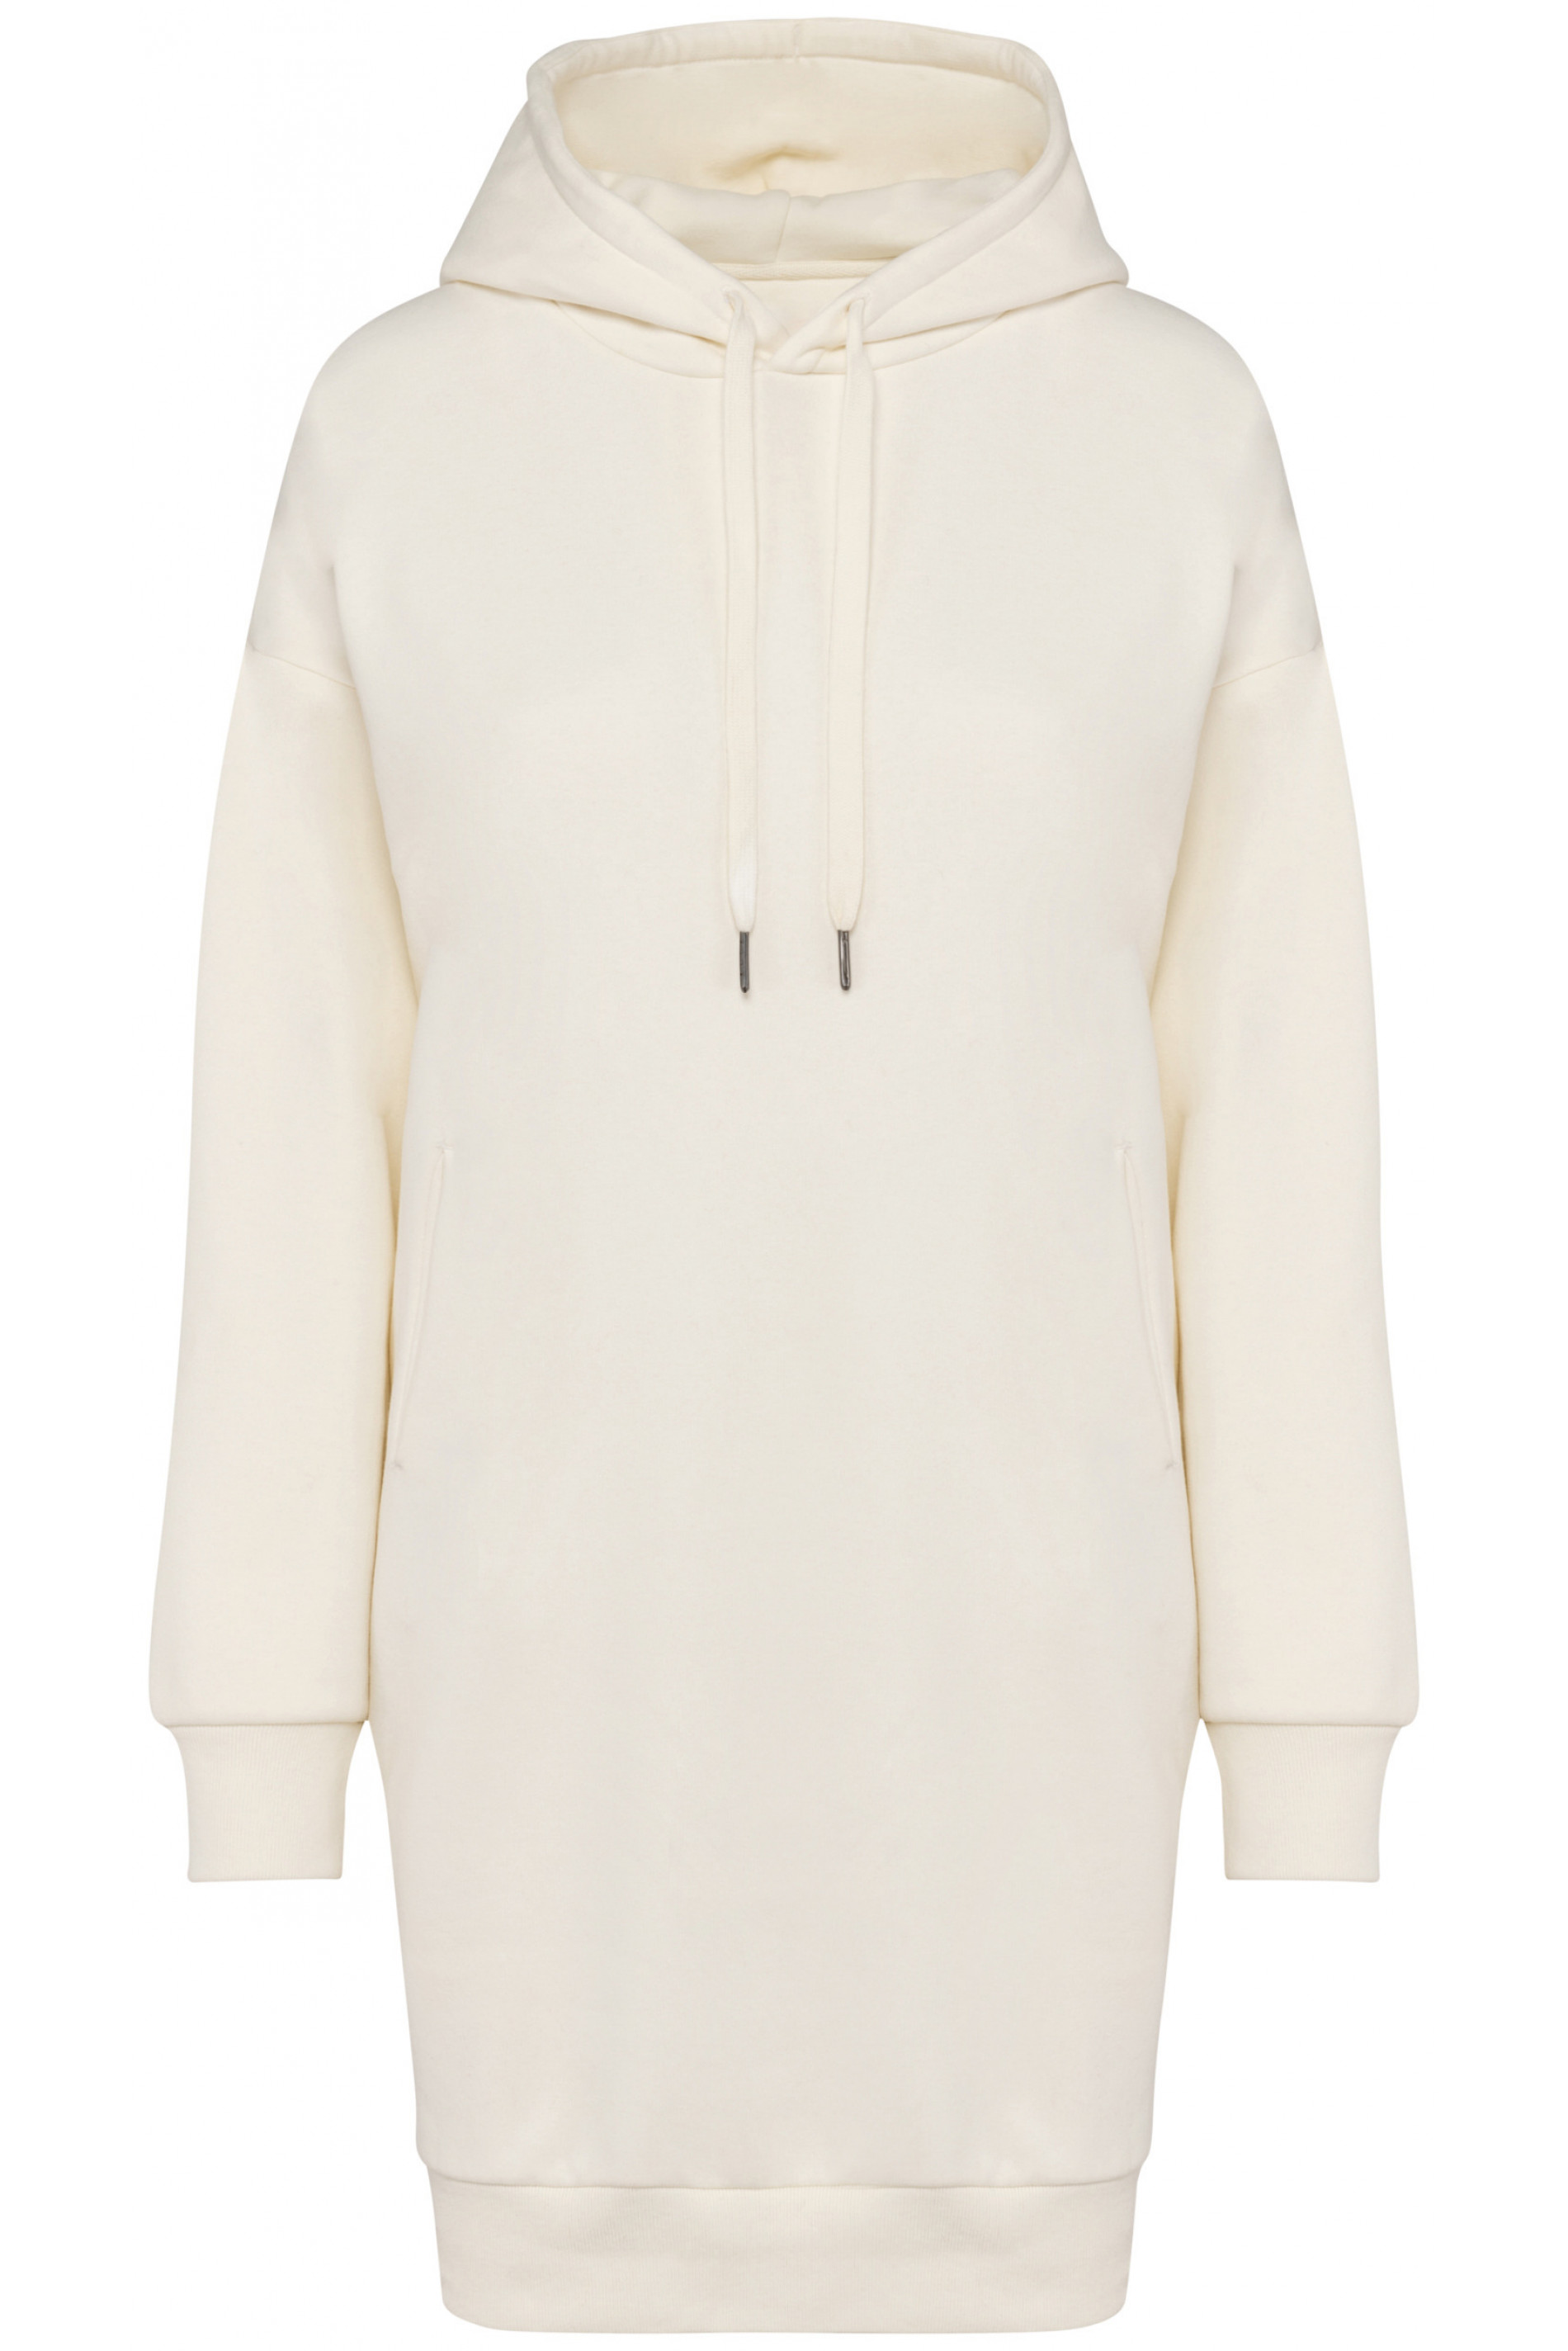 Bio-Baumwoll-Sweatshirt-Kleid 300 g/m² Native Spirit® Ivory L